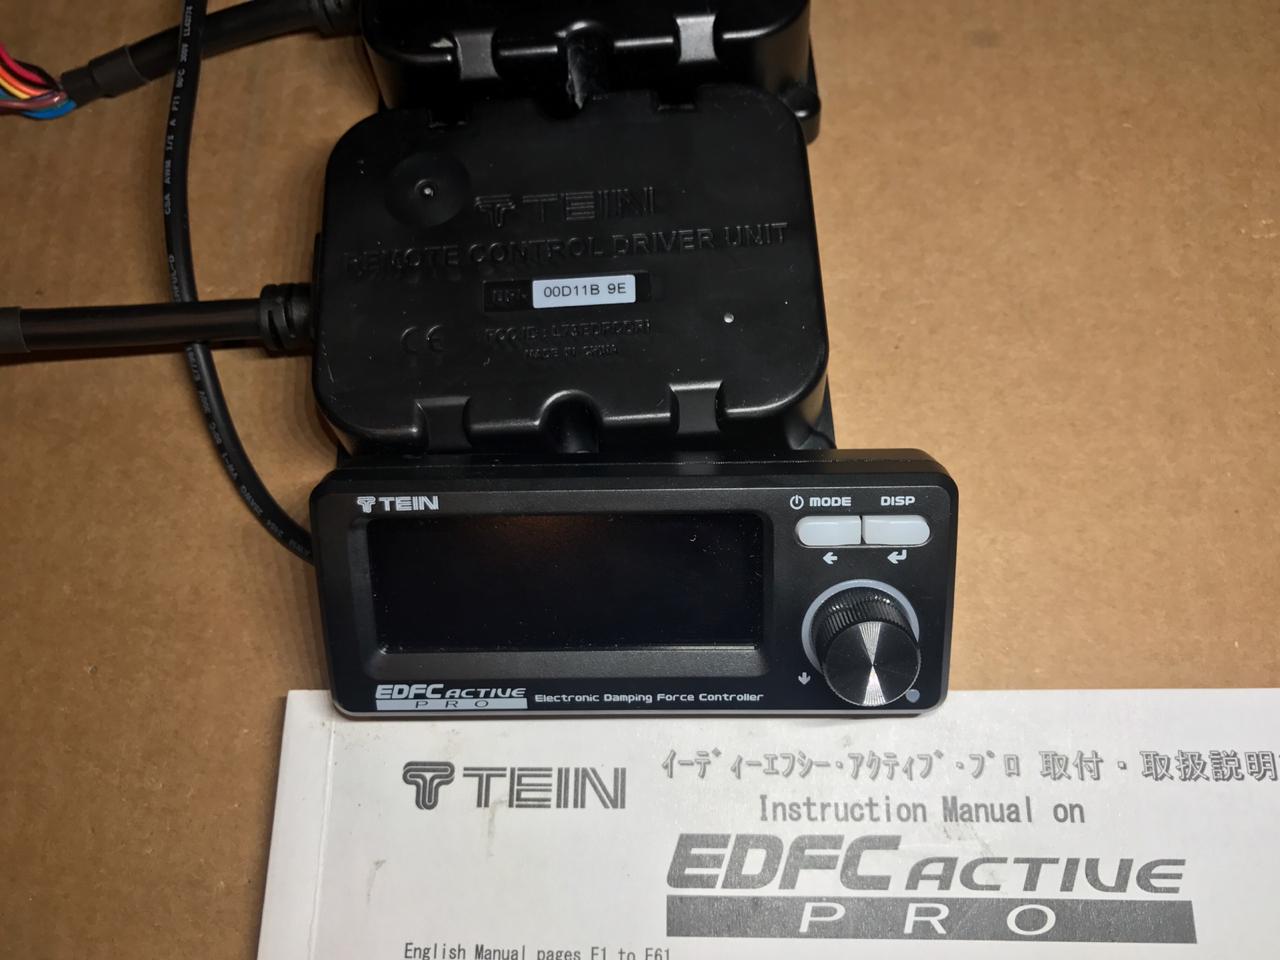 TEIN EDFC Active Pro